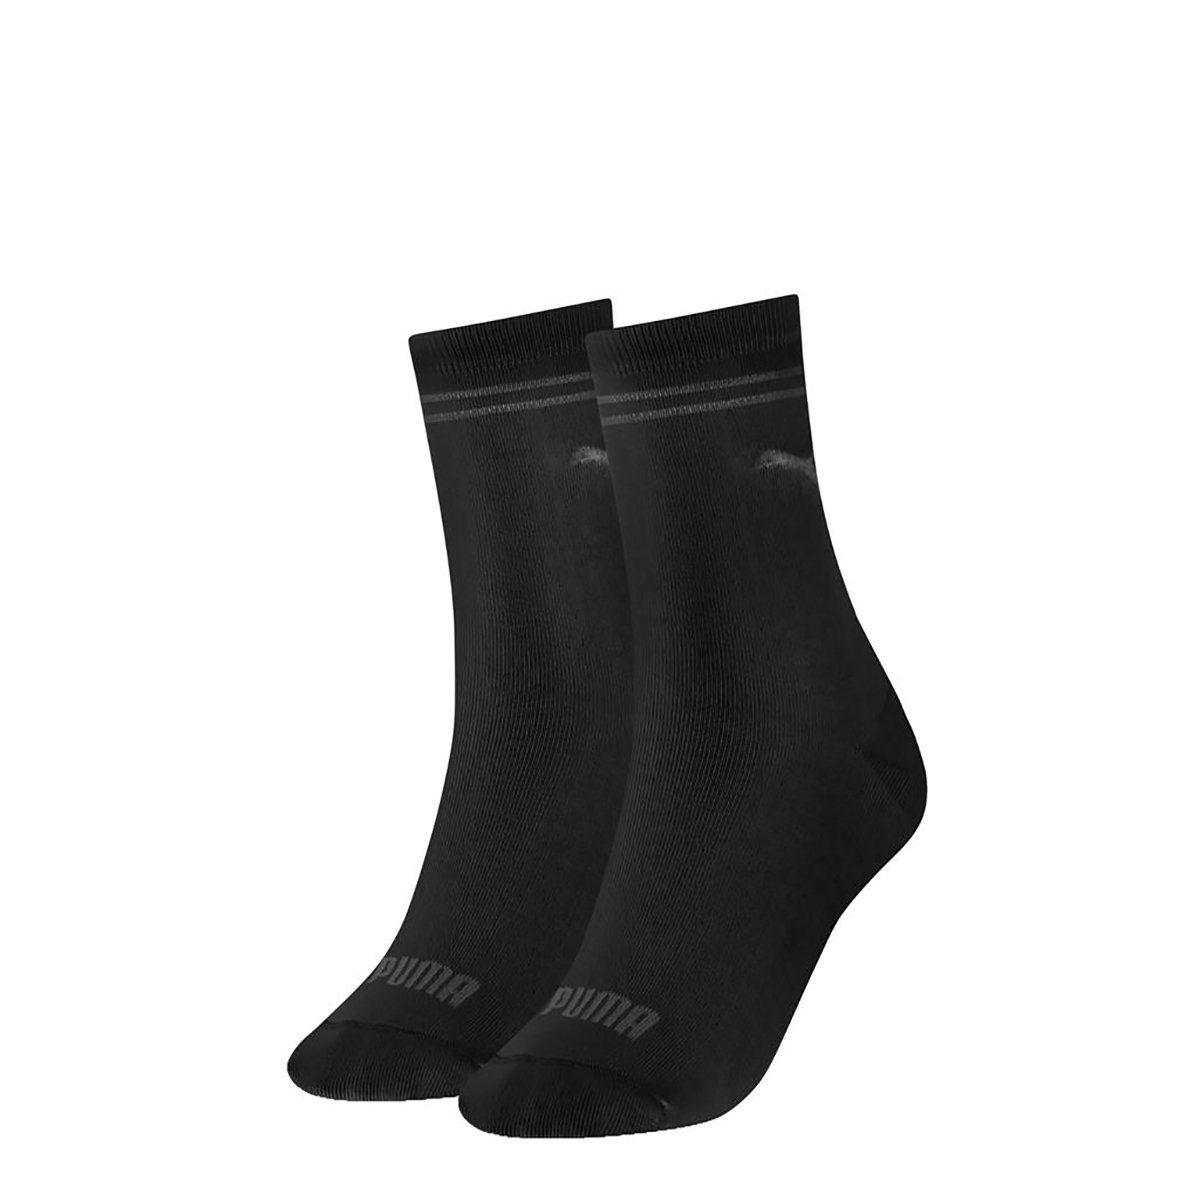 PUMA Kurzsocken Damen Socken, 2er Pack - Classic Socks